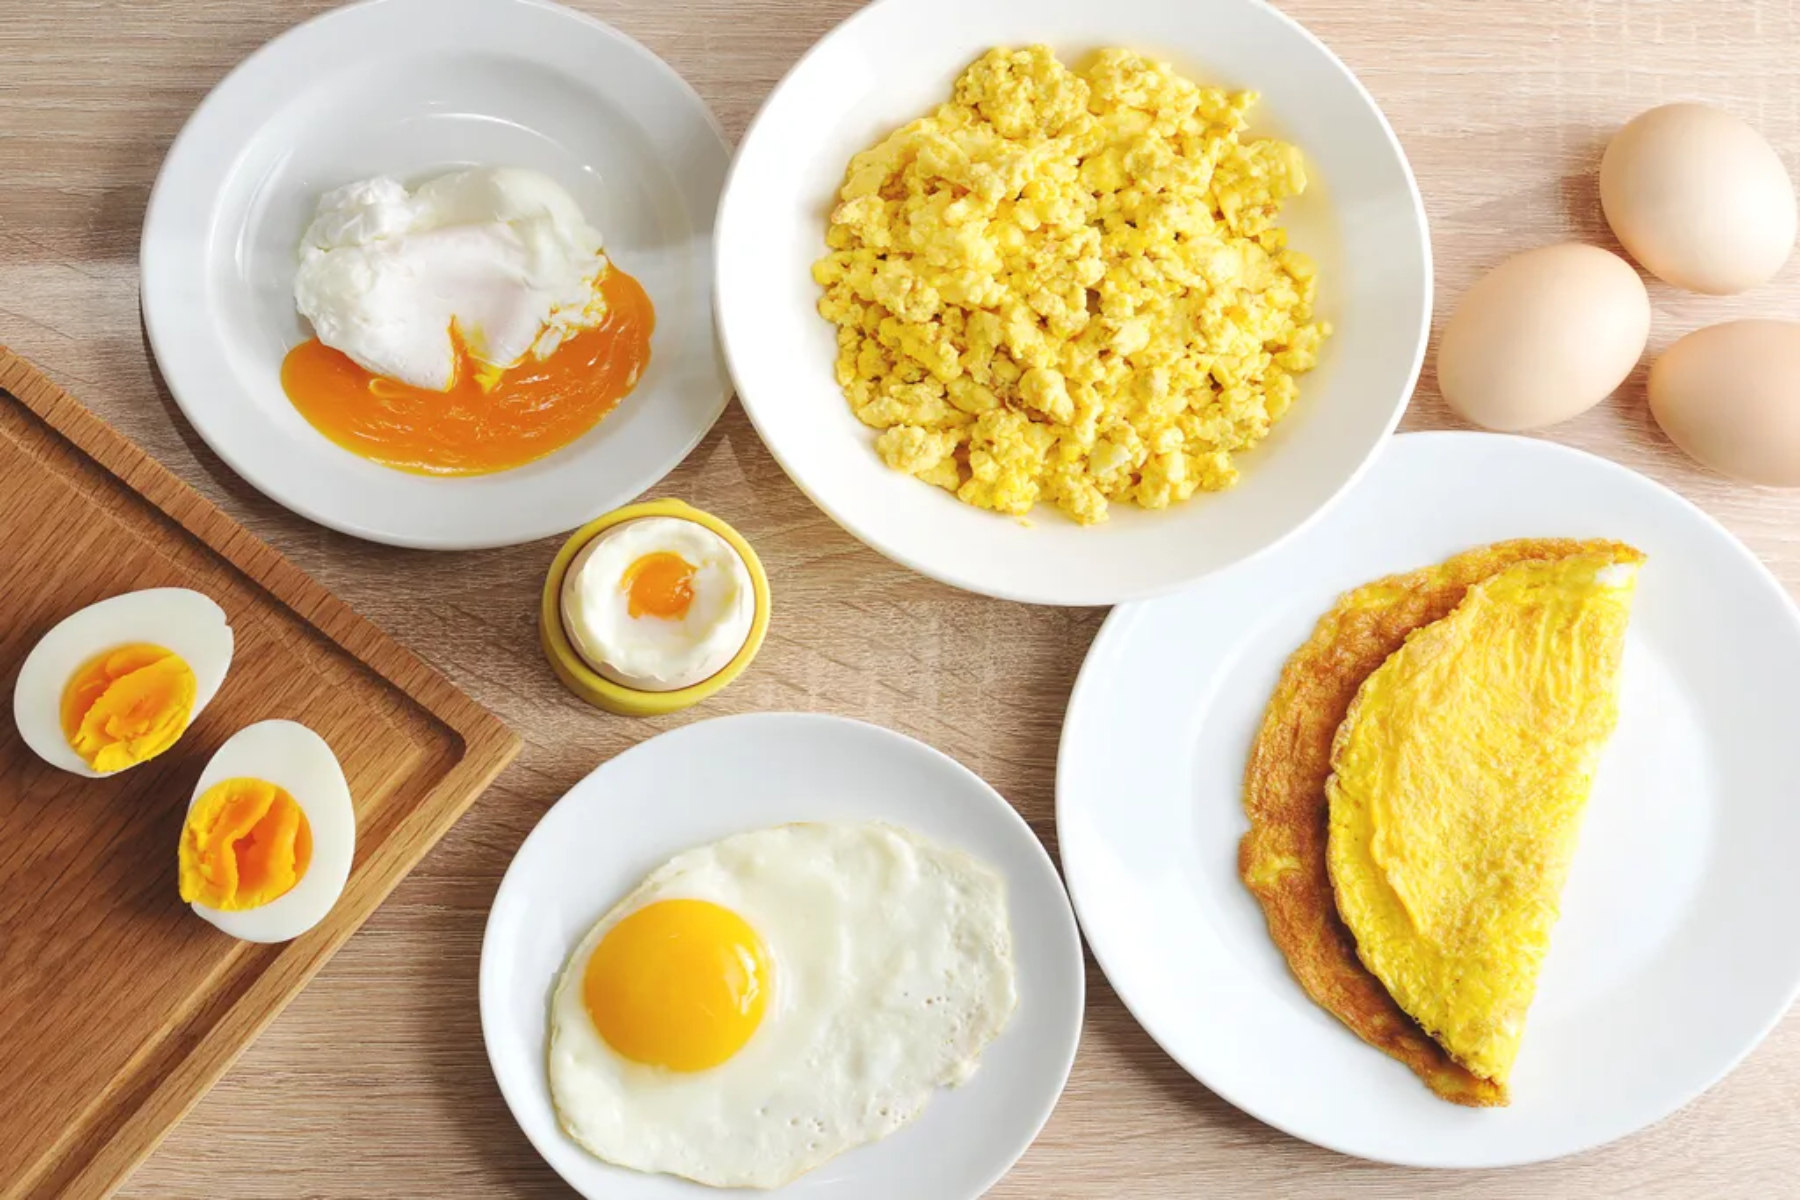 Αυγά: Προσθέστε τα αυγά στα εβδομαδιαία σας γεύματα